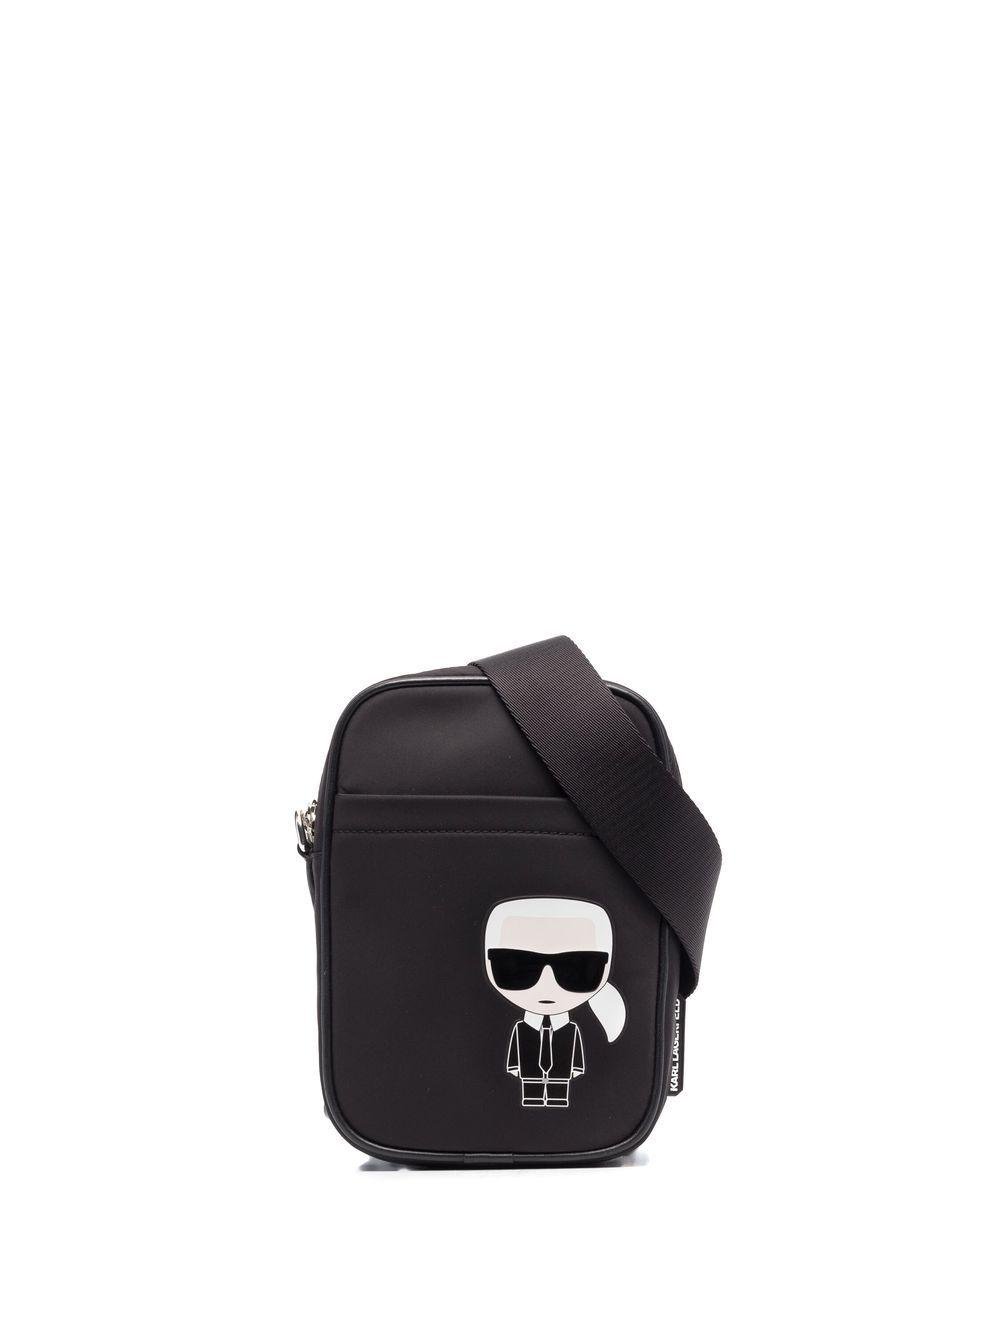 Karl Lagerfeld K/Ikonik Laptop Bag - Farfetch